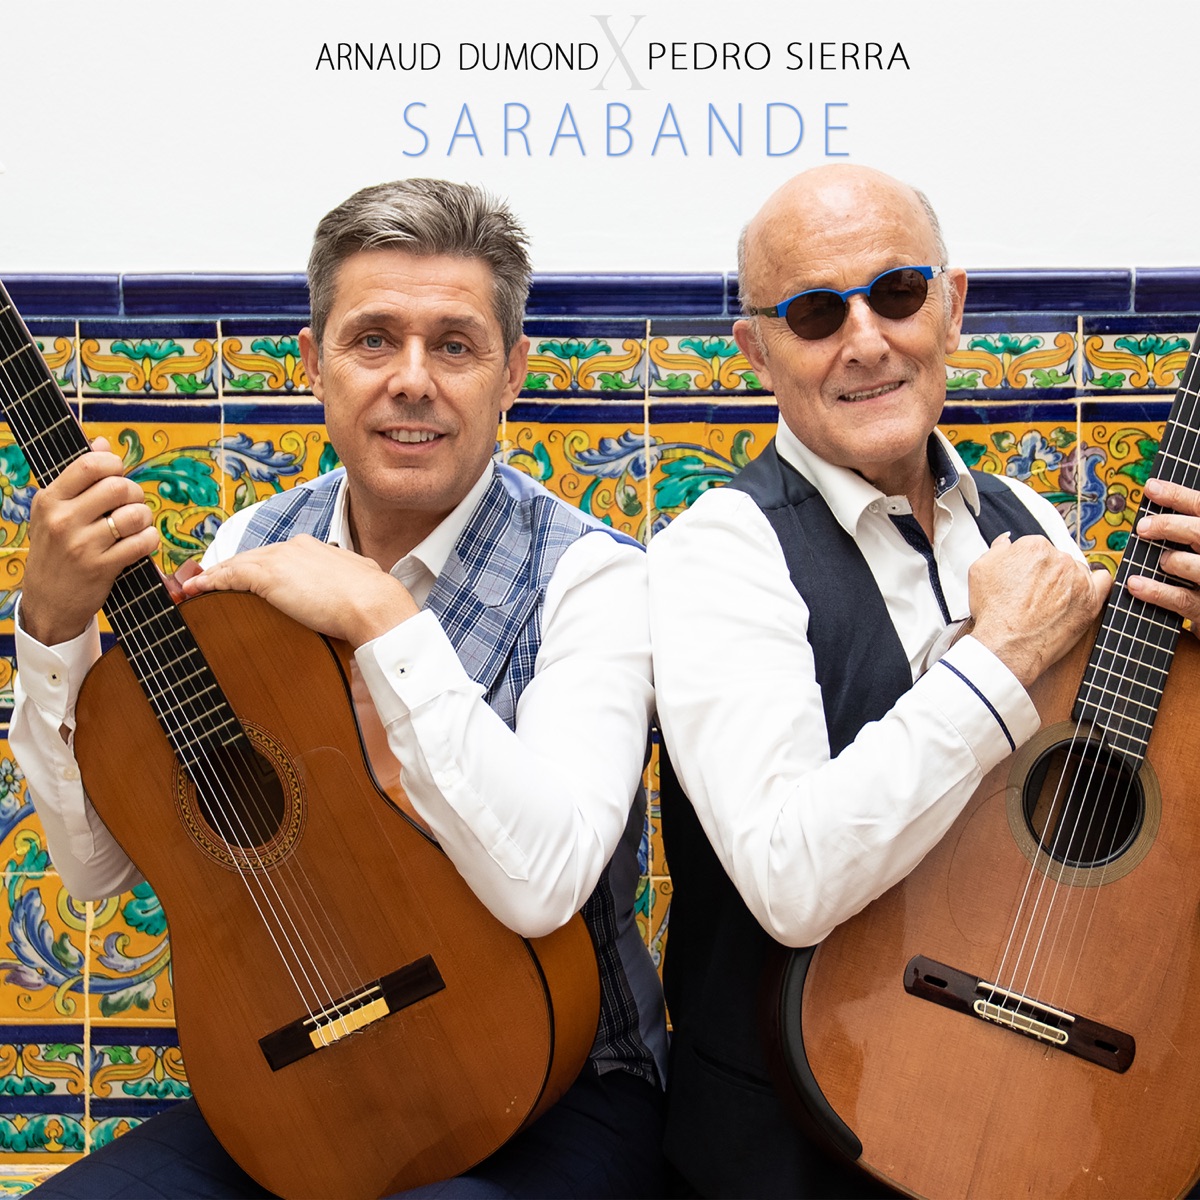 Sarabande - Single by Arnaud Dumond & Pedro Sierra on Apple Music